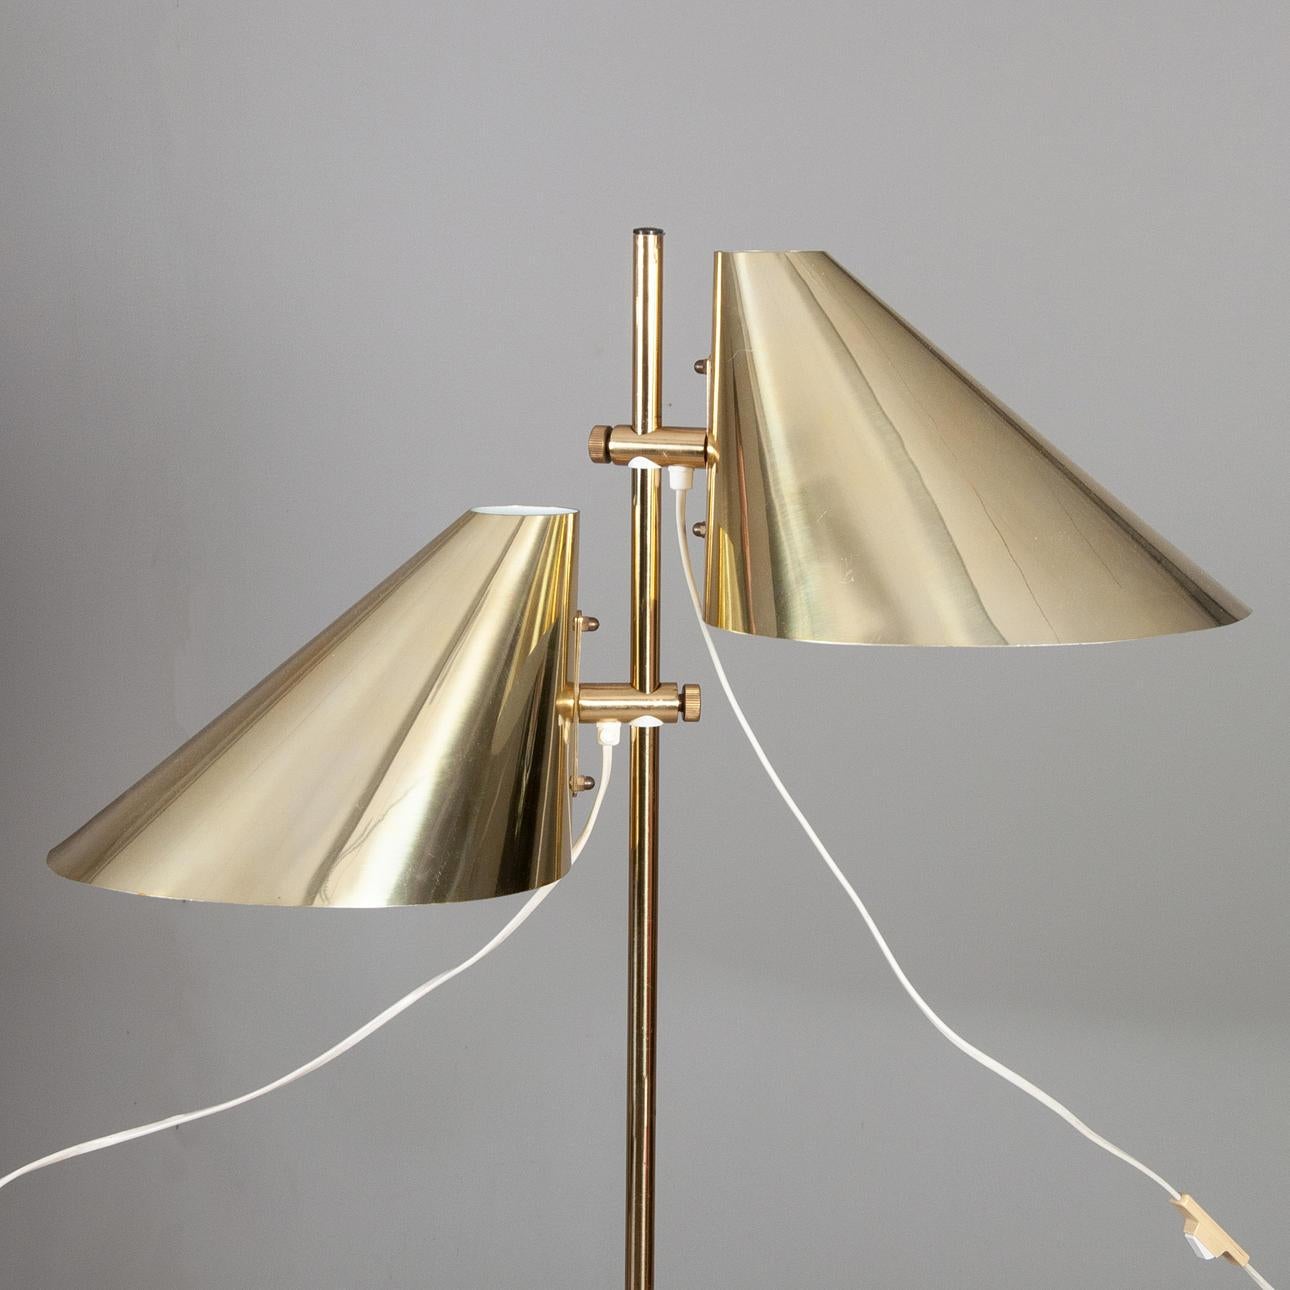 Diese schicke und elegante Stehleuchte ist mit einem Höhenverstellsystem für die 2 Lampen ausgestattet, das eine ästhetische und raffinierte Beleuchtung ermöglicht. Moderne Lampe, hergestellt in Schweden von Markaryd in den 1960er Jahren. Seine